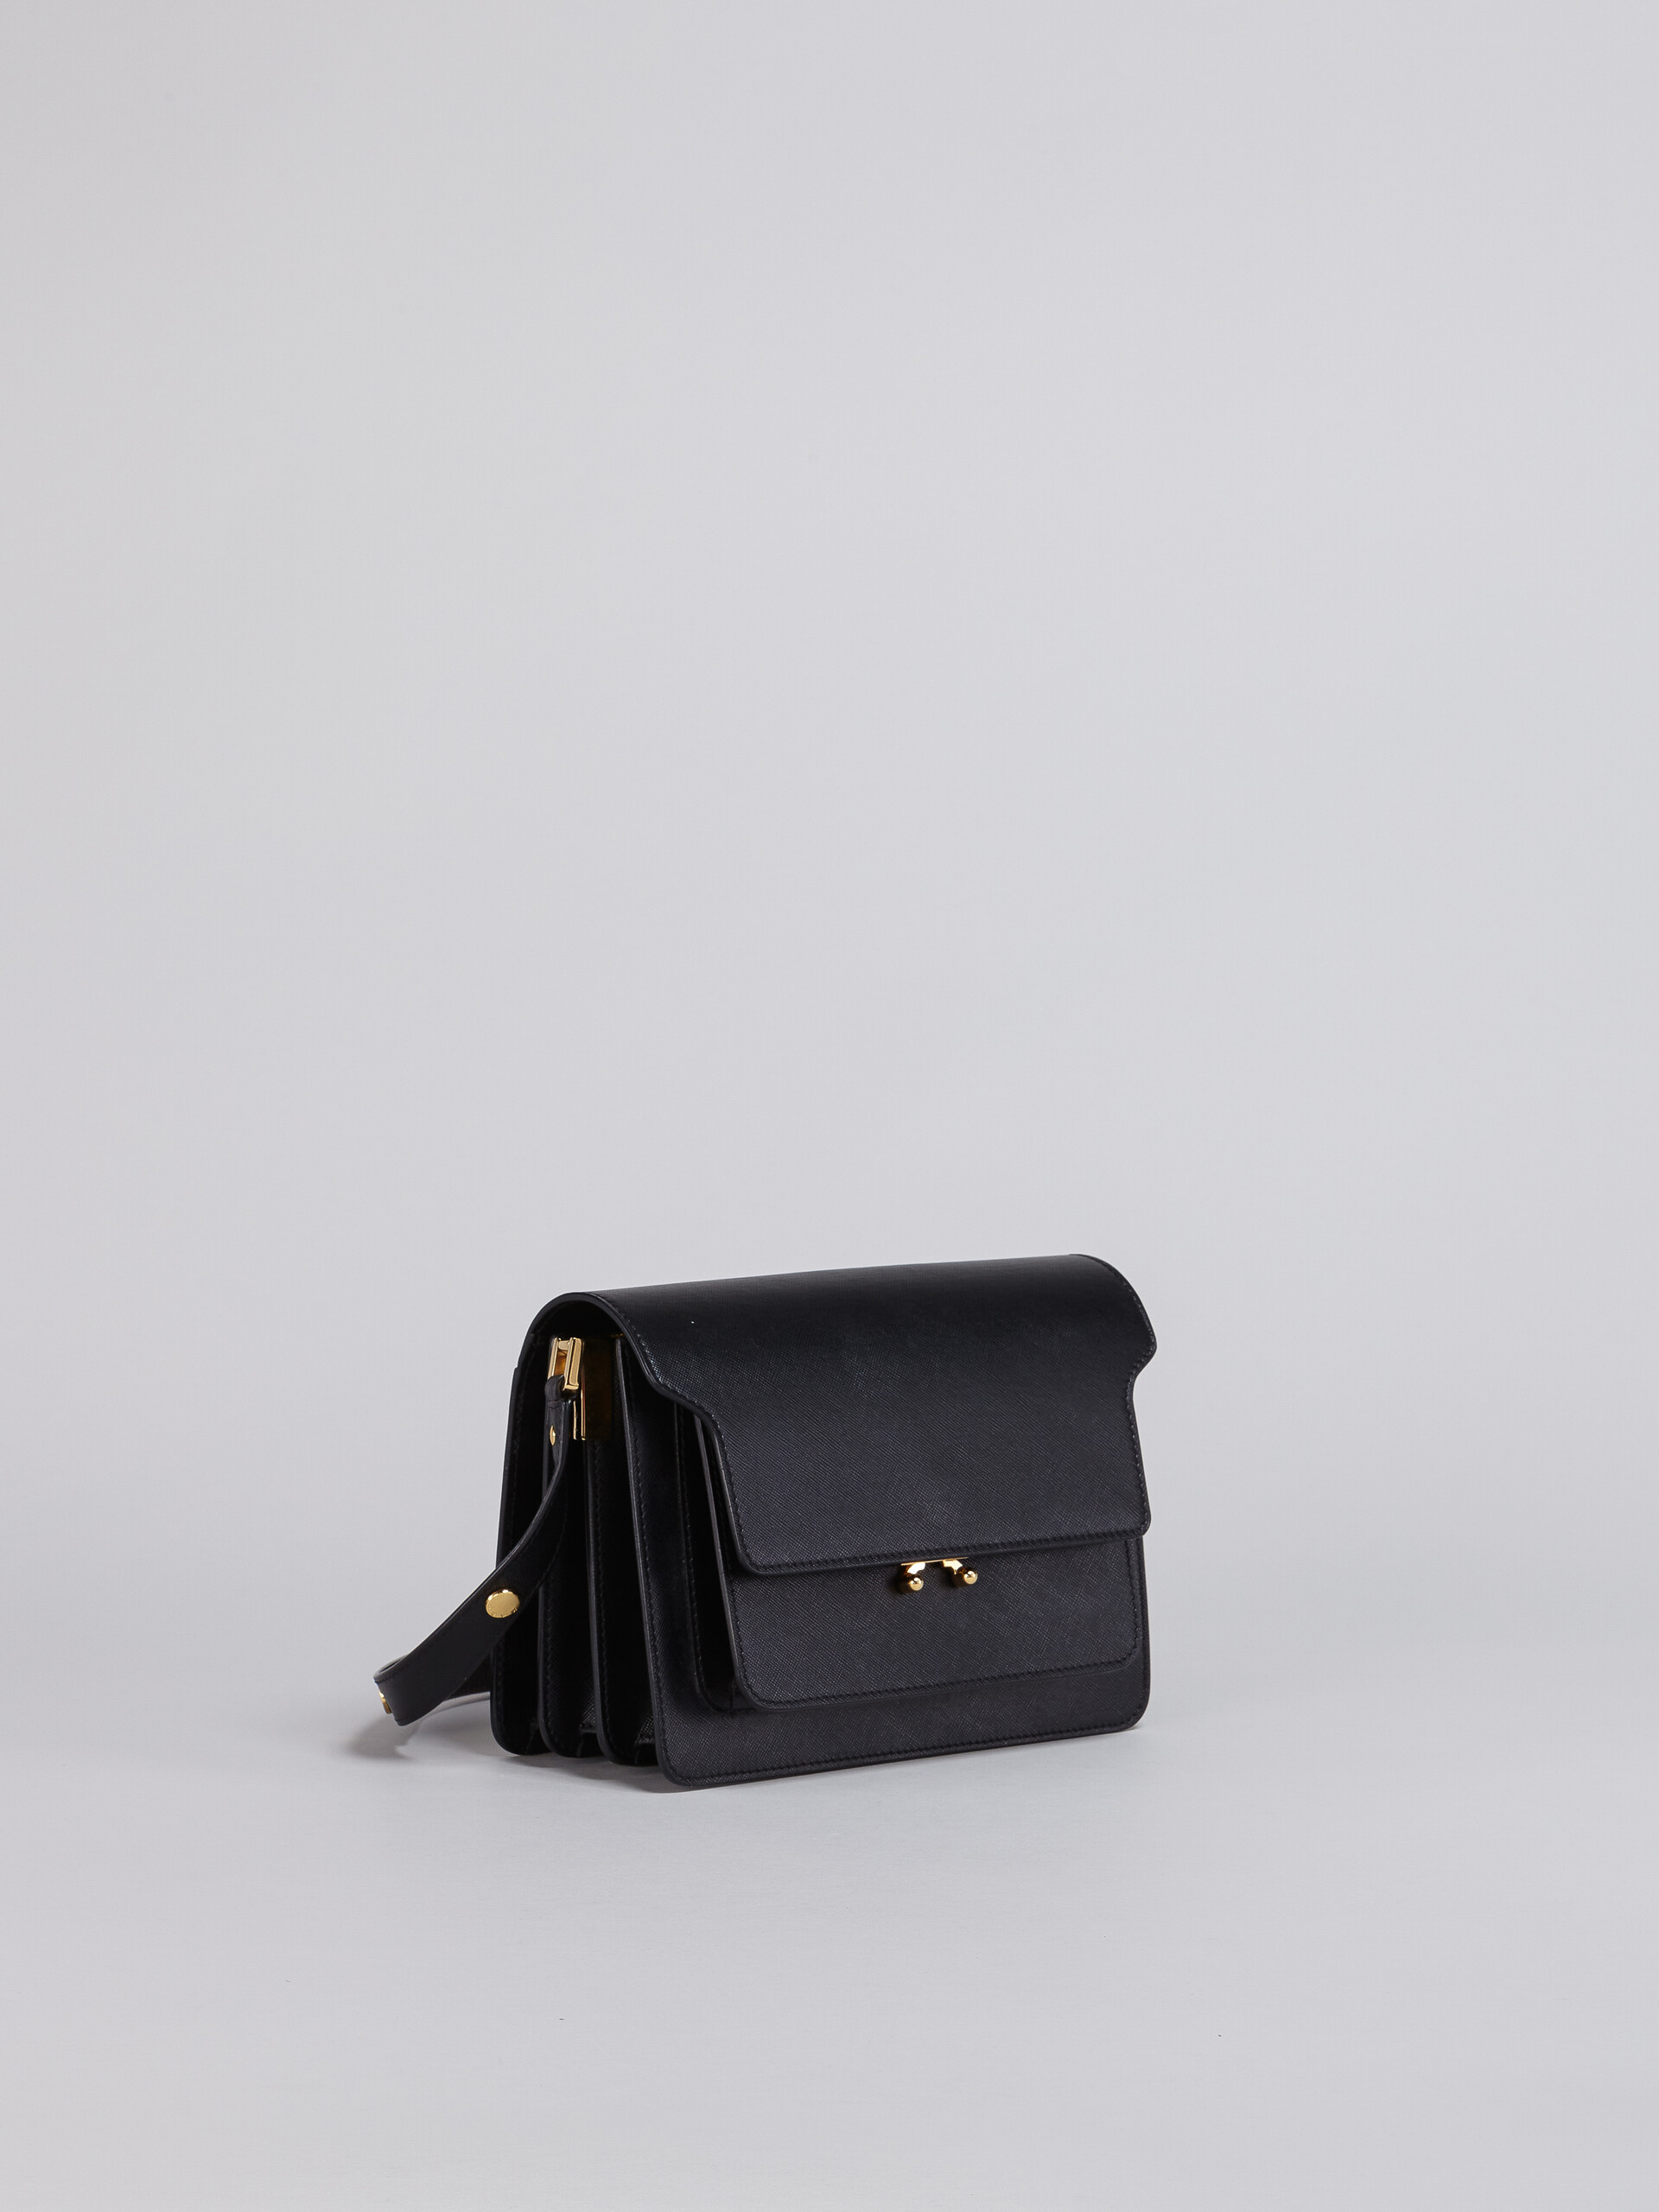 TRUNK medium bag in black saffiano leather - Shoulder Bag - Image 5